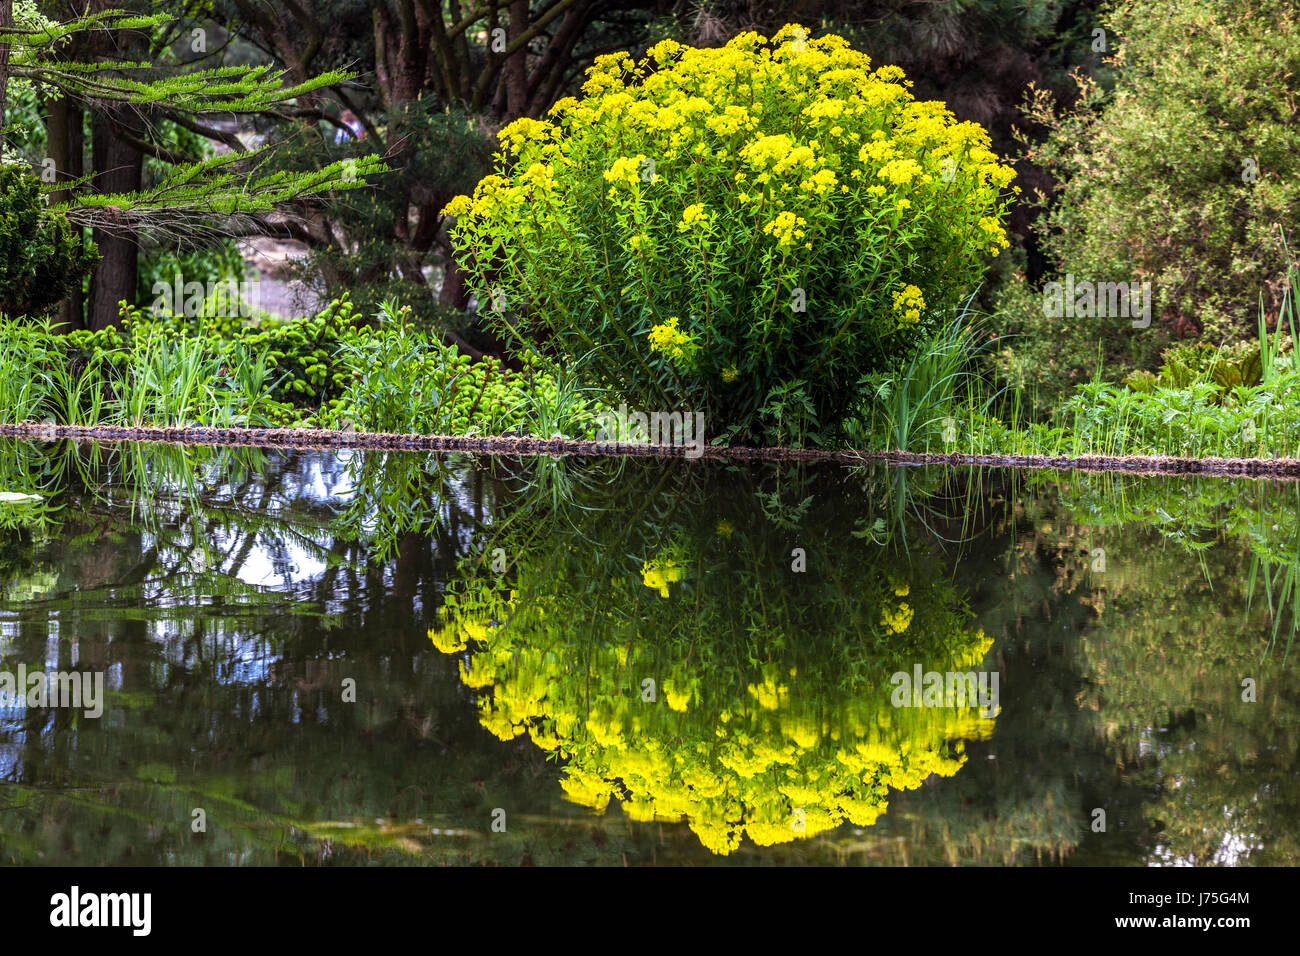 Euphorbia palustris Marsh spurge spring Flowering at garden pond Stock Photo